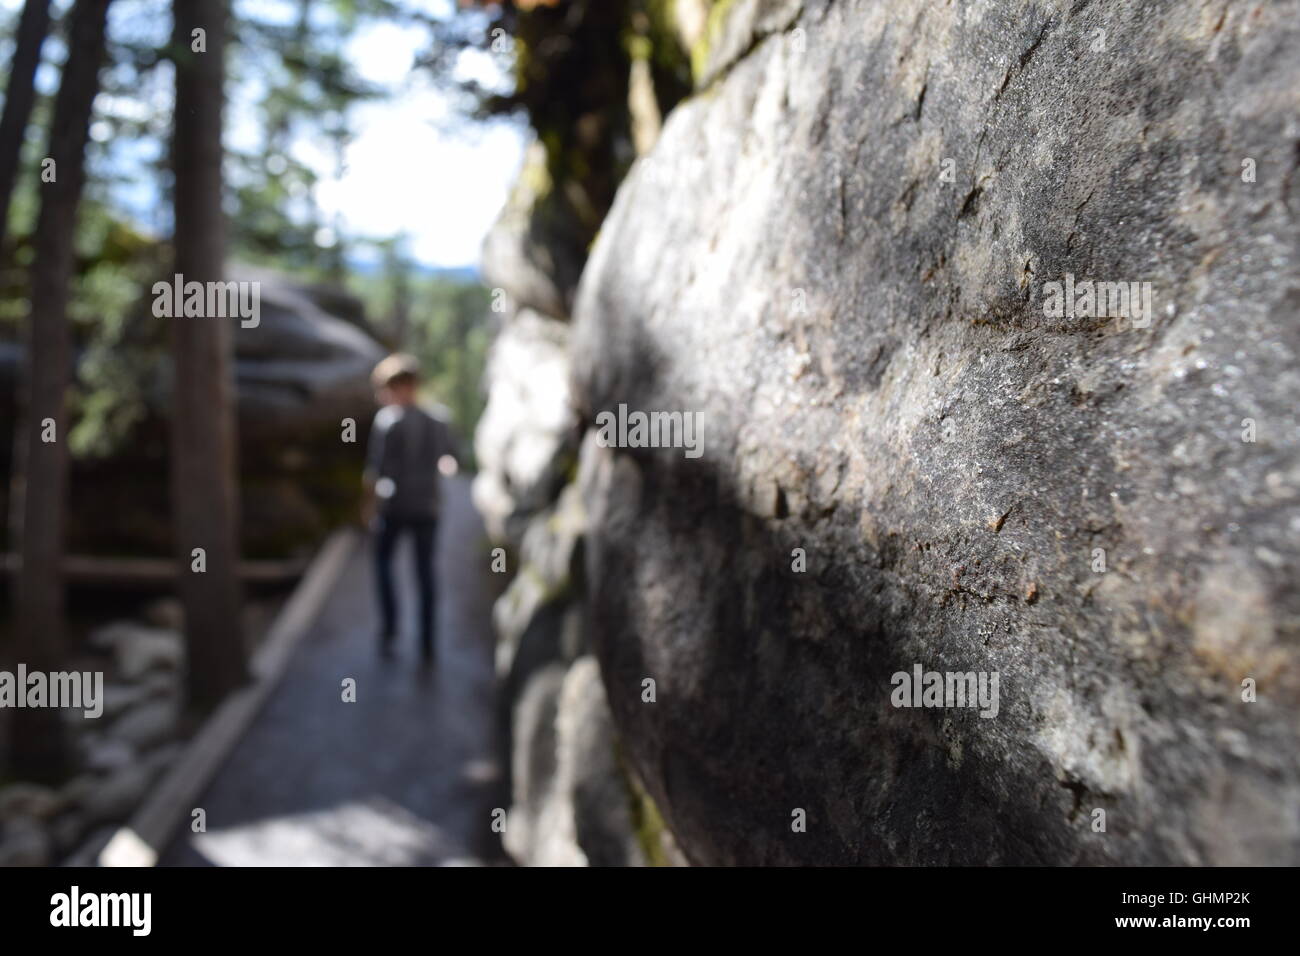 Boy walking down stone path Stock Photo